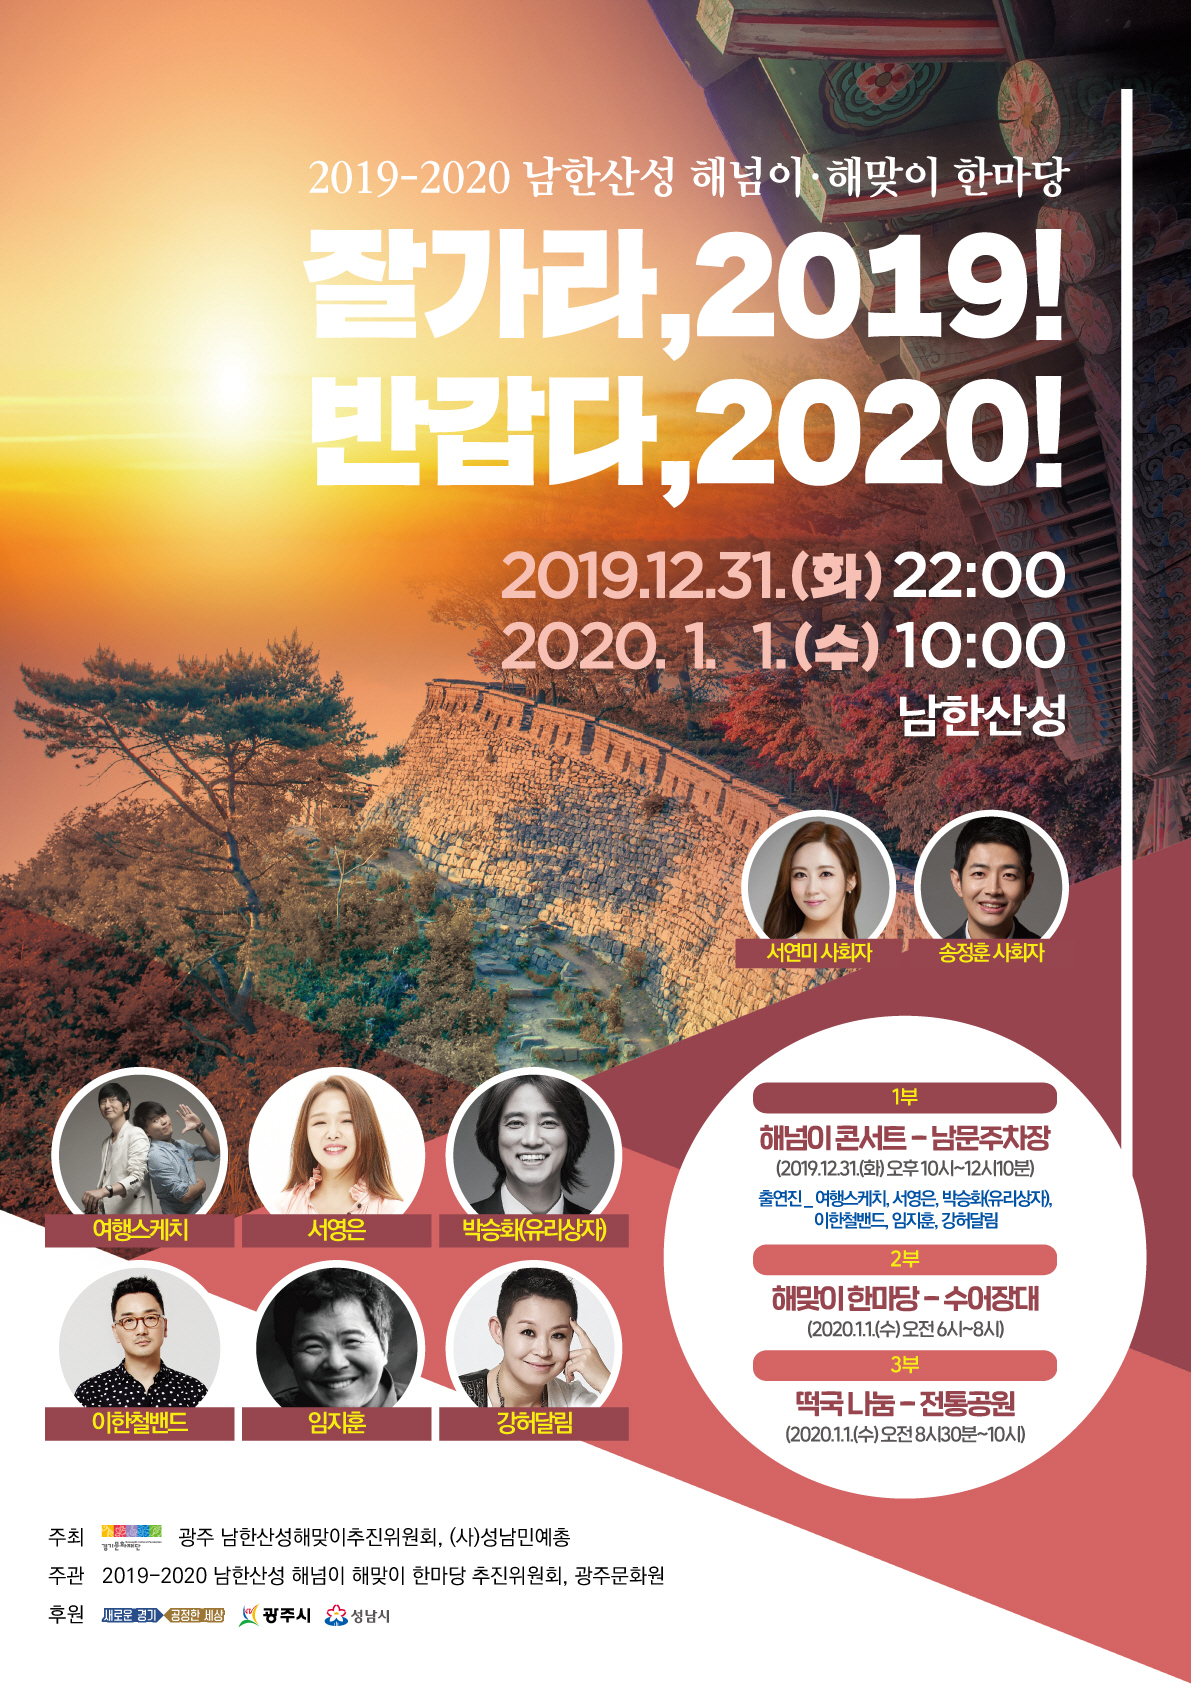 2019-2020 경기도 해넘이·해맞이 한마당, 남한산성서 개최